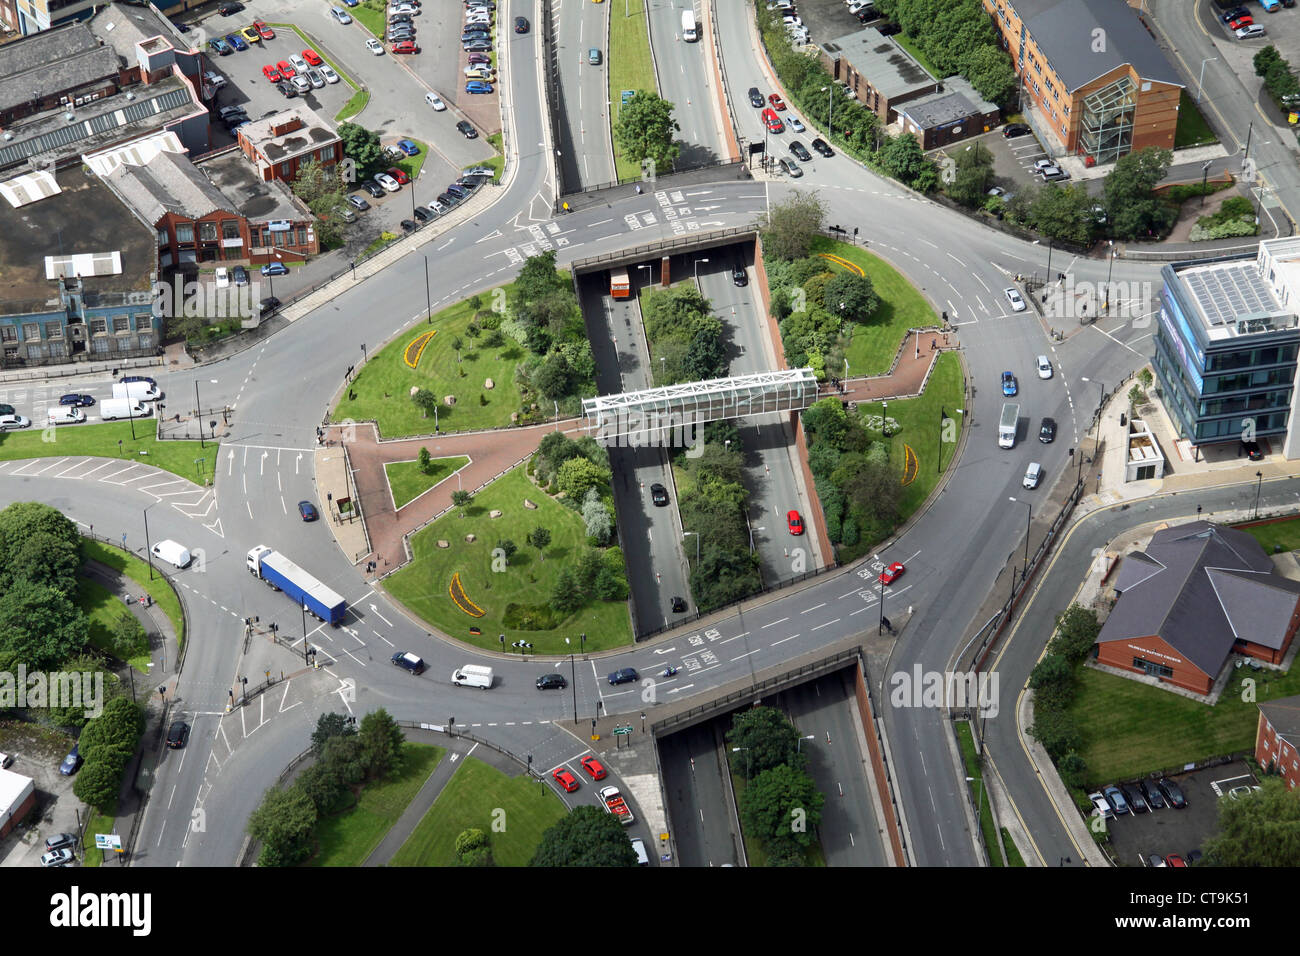 Vue aérienne d'un grand rond-point sur une route à deux voies, avec verdure et une passerelle Banque D'Images